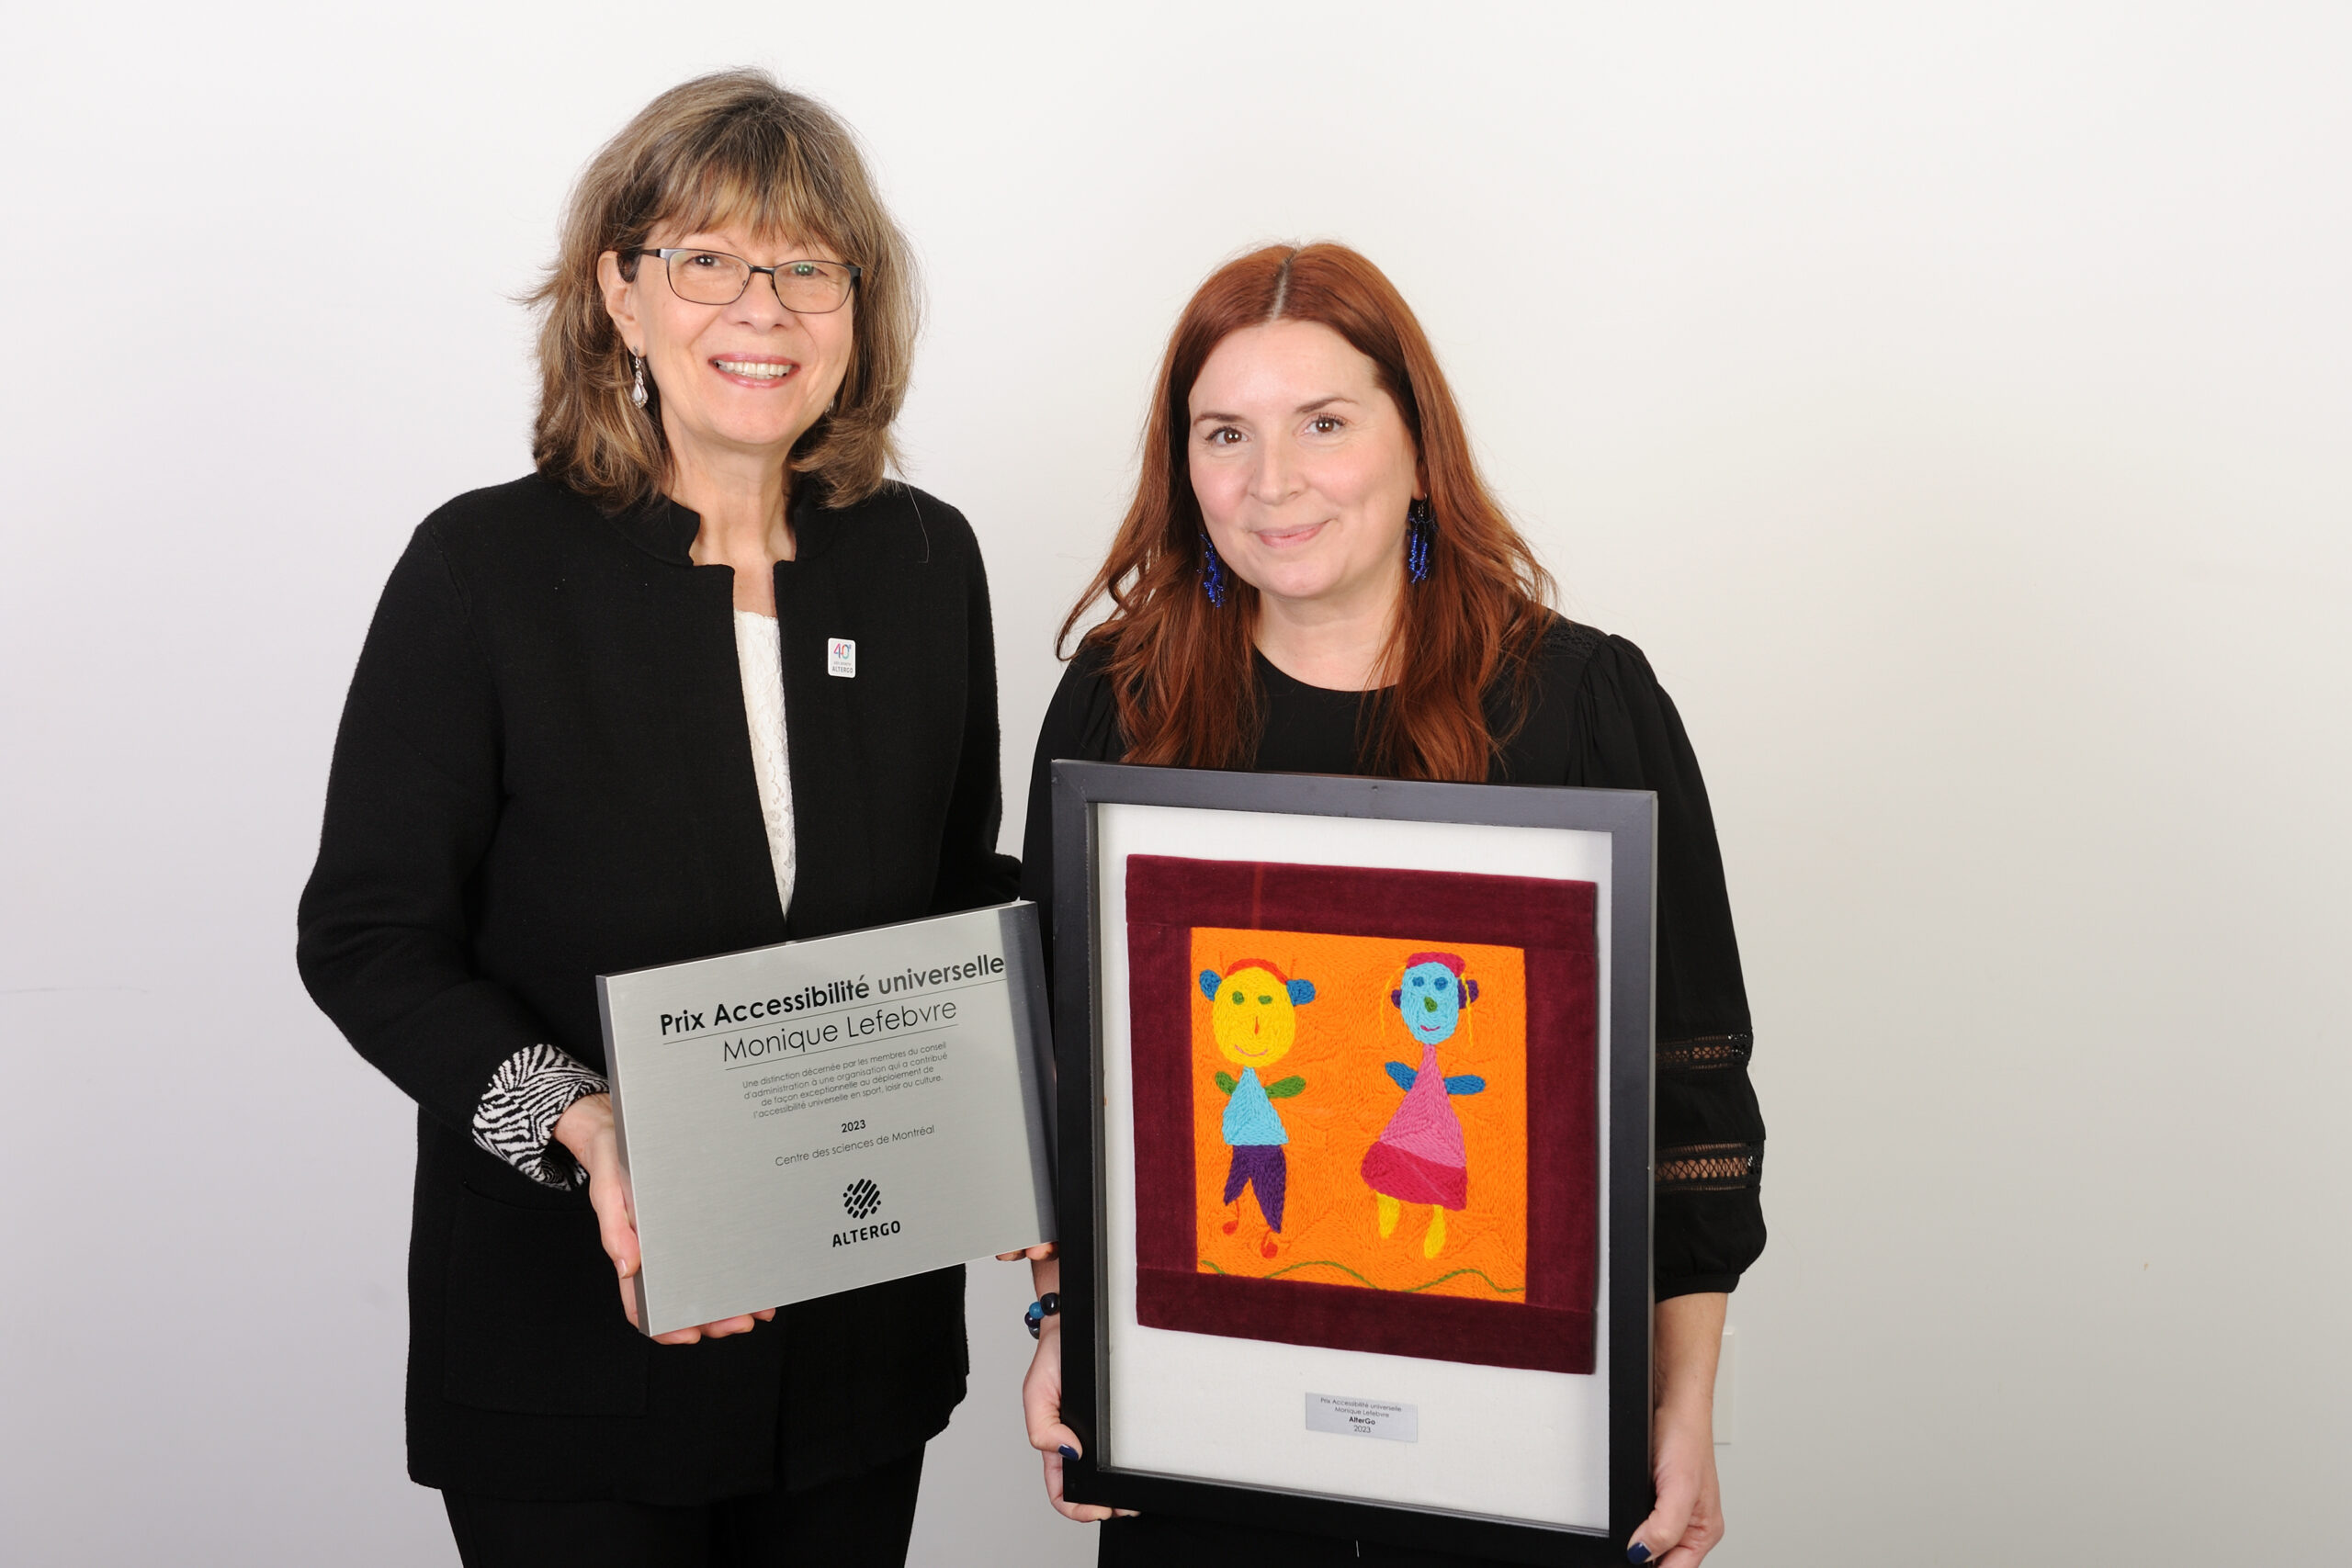 Monique Lefebvre et Cybèle Robichaud, la directrice du Centre des sciences de Montréal, posent avec le prix Accessibilité universelle Monique Lefebvre.